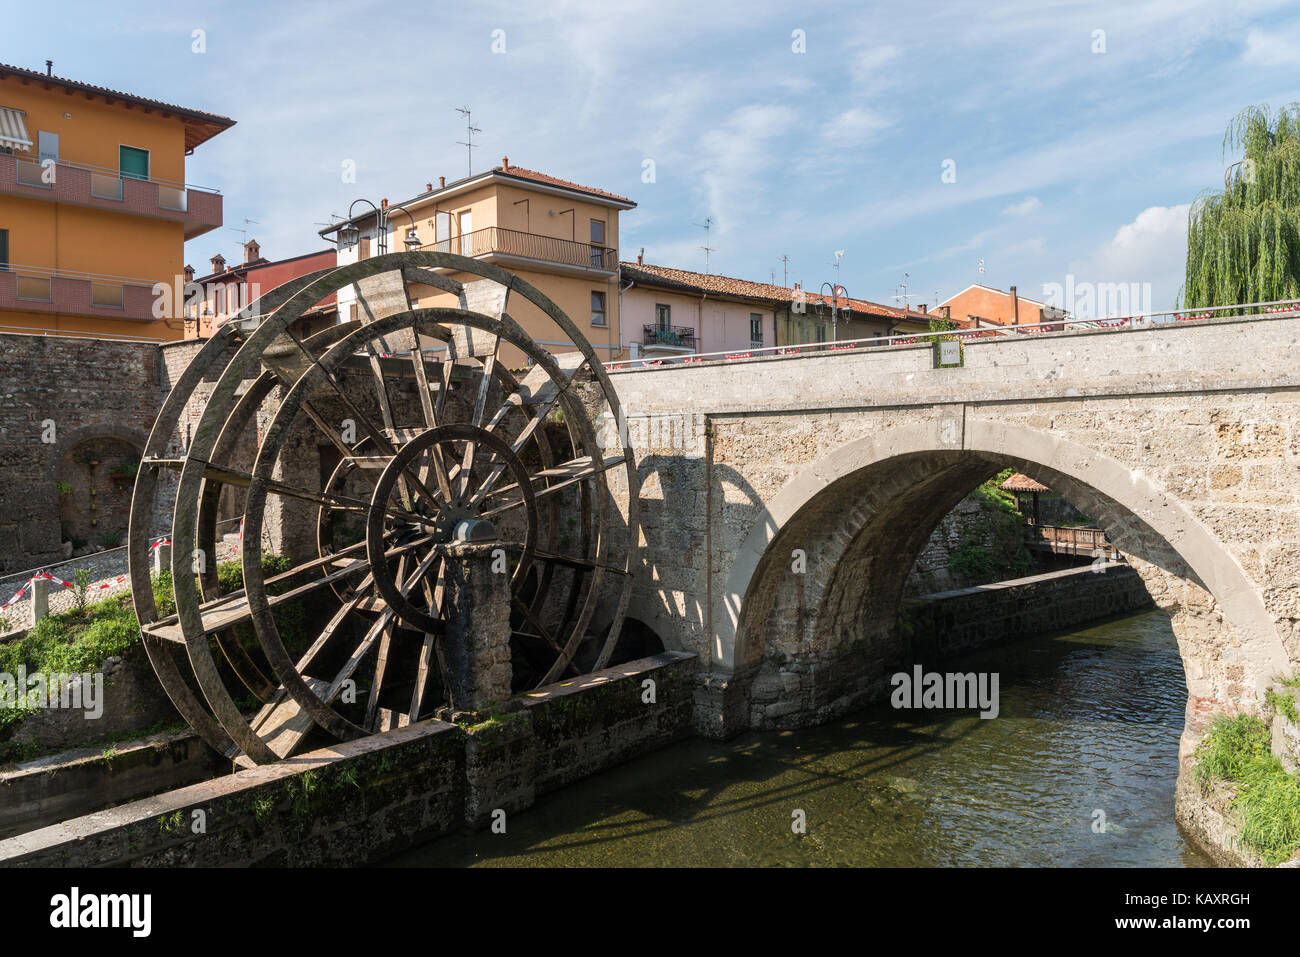 Groppello d'Adda (Mailand, Lombardei, Italien), alte Brücke und wassermühle an einem sonnigen Sommermorgen Stockfoto